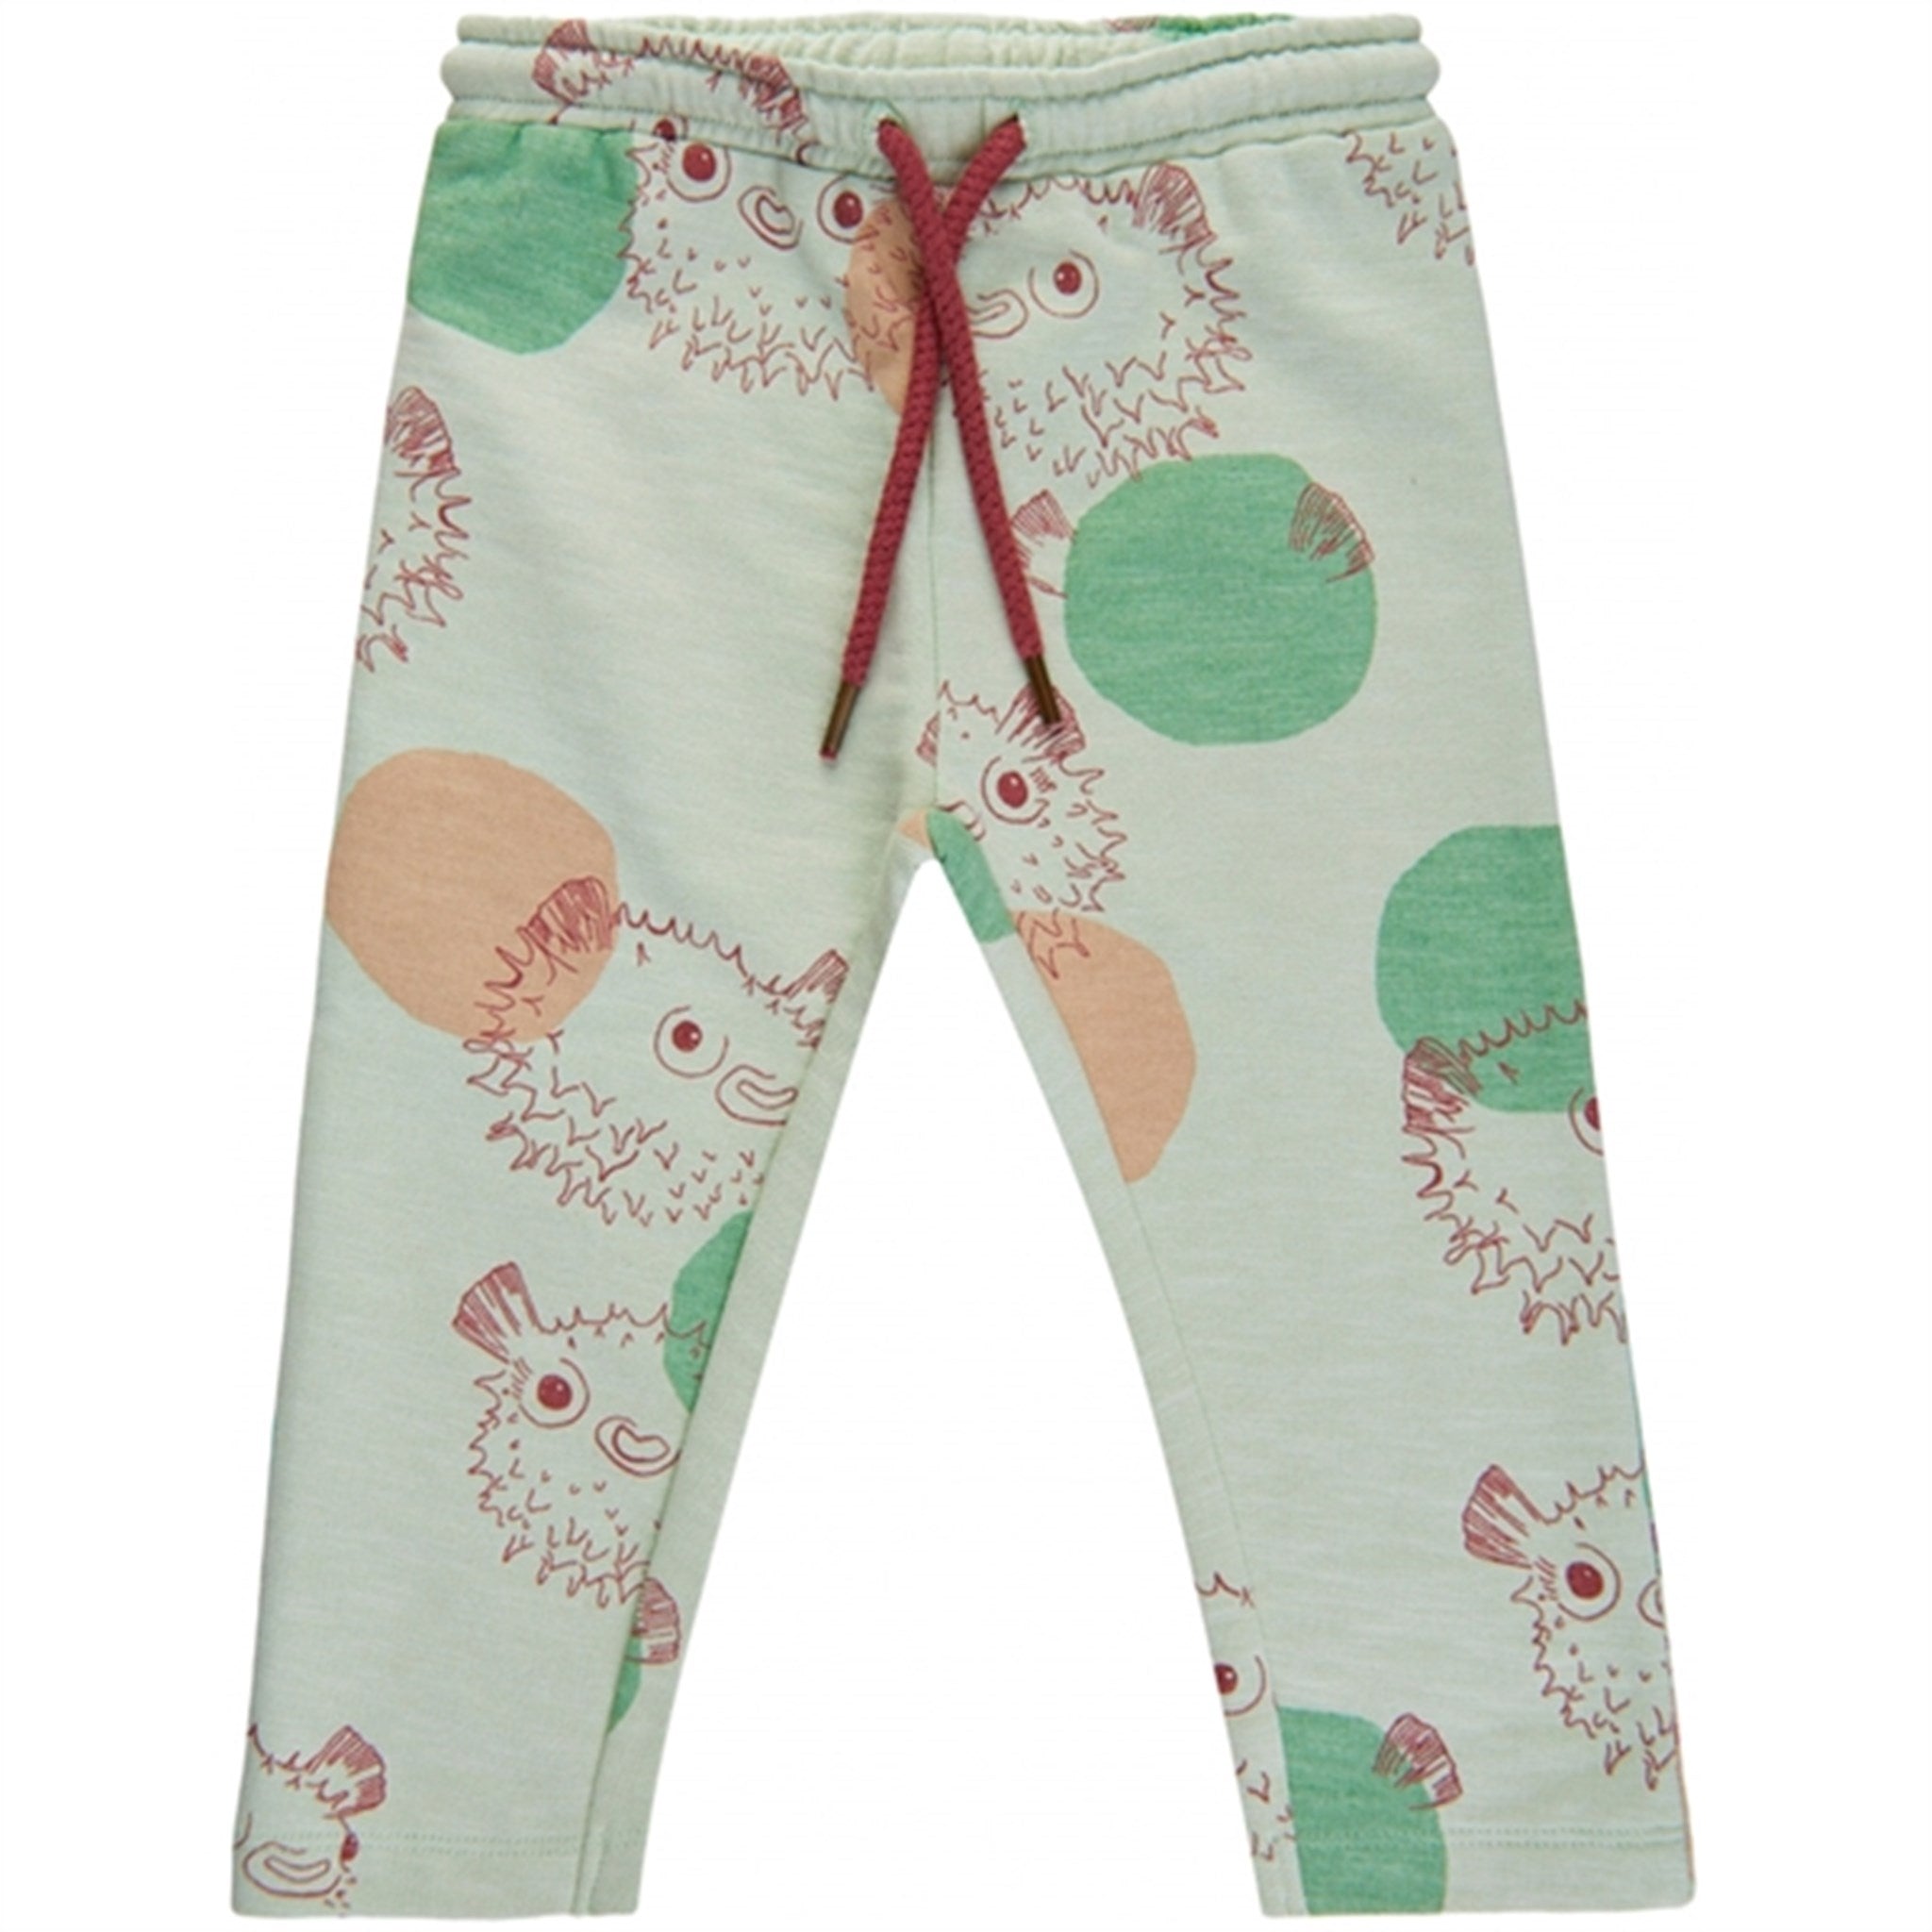 Soft Gallery Woodrose Jeanette Seaflower Pants